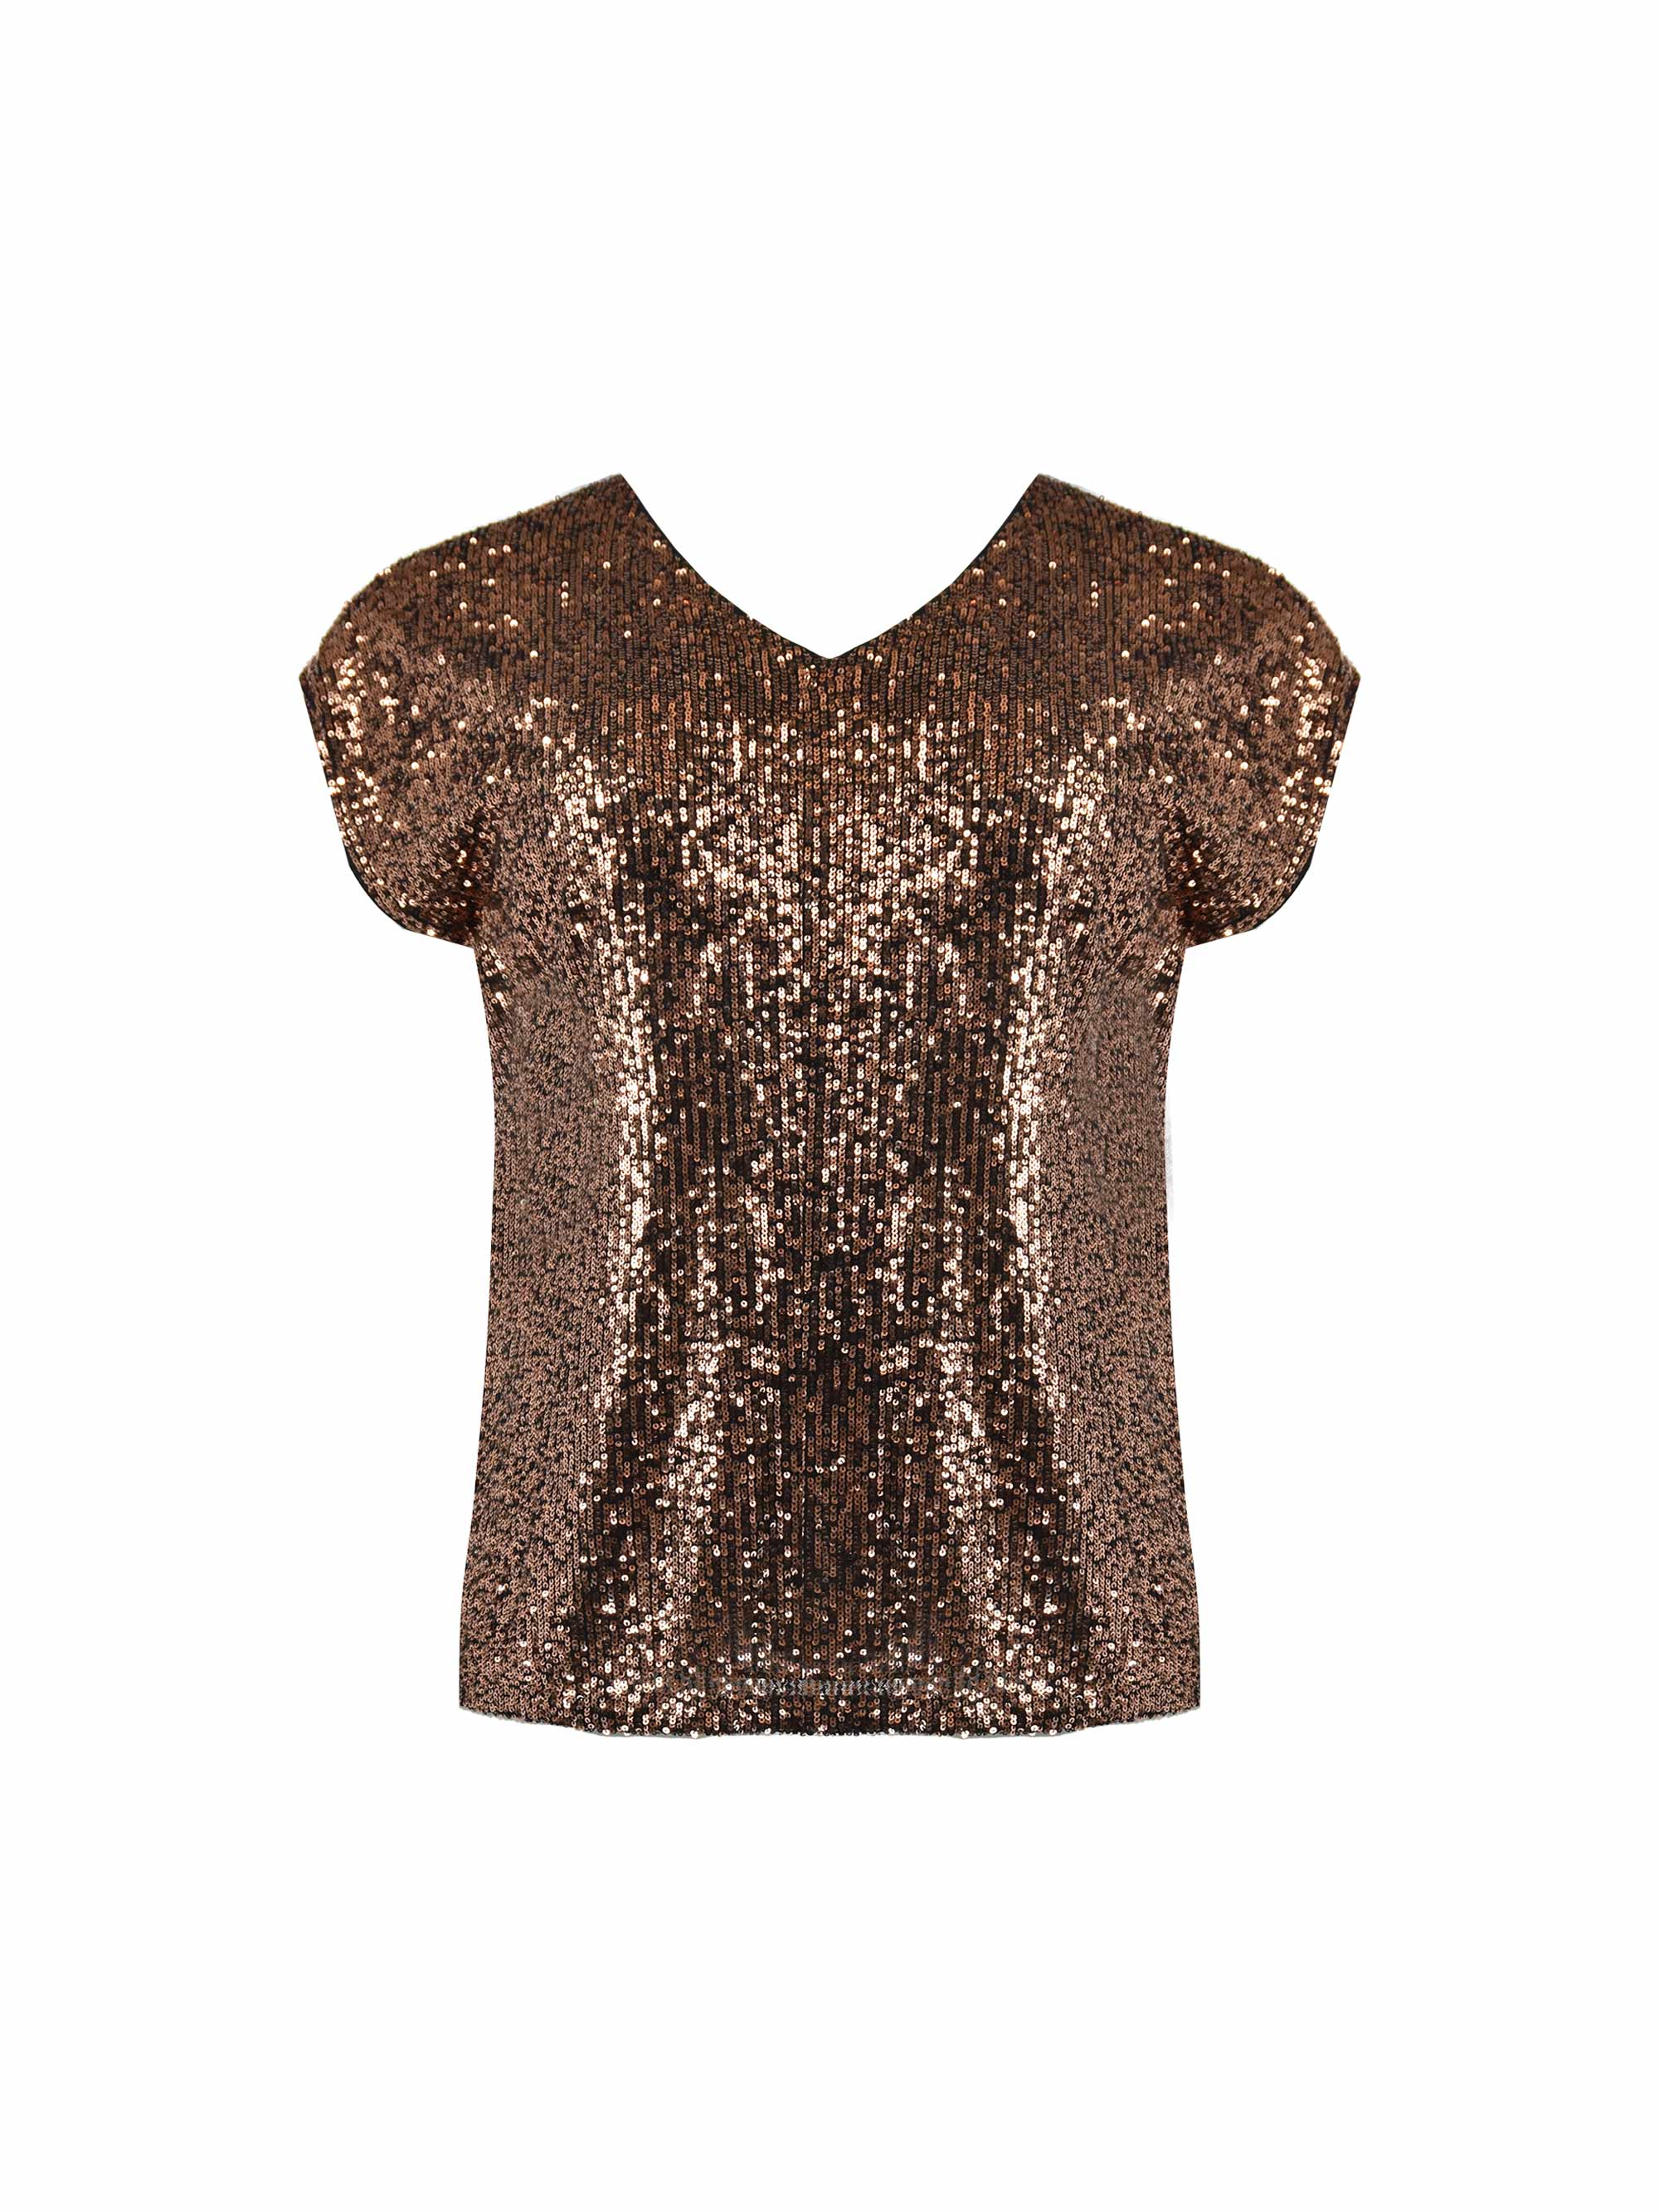 Bronze Sequin T-Shirt